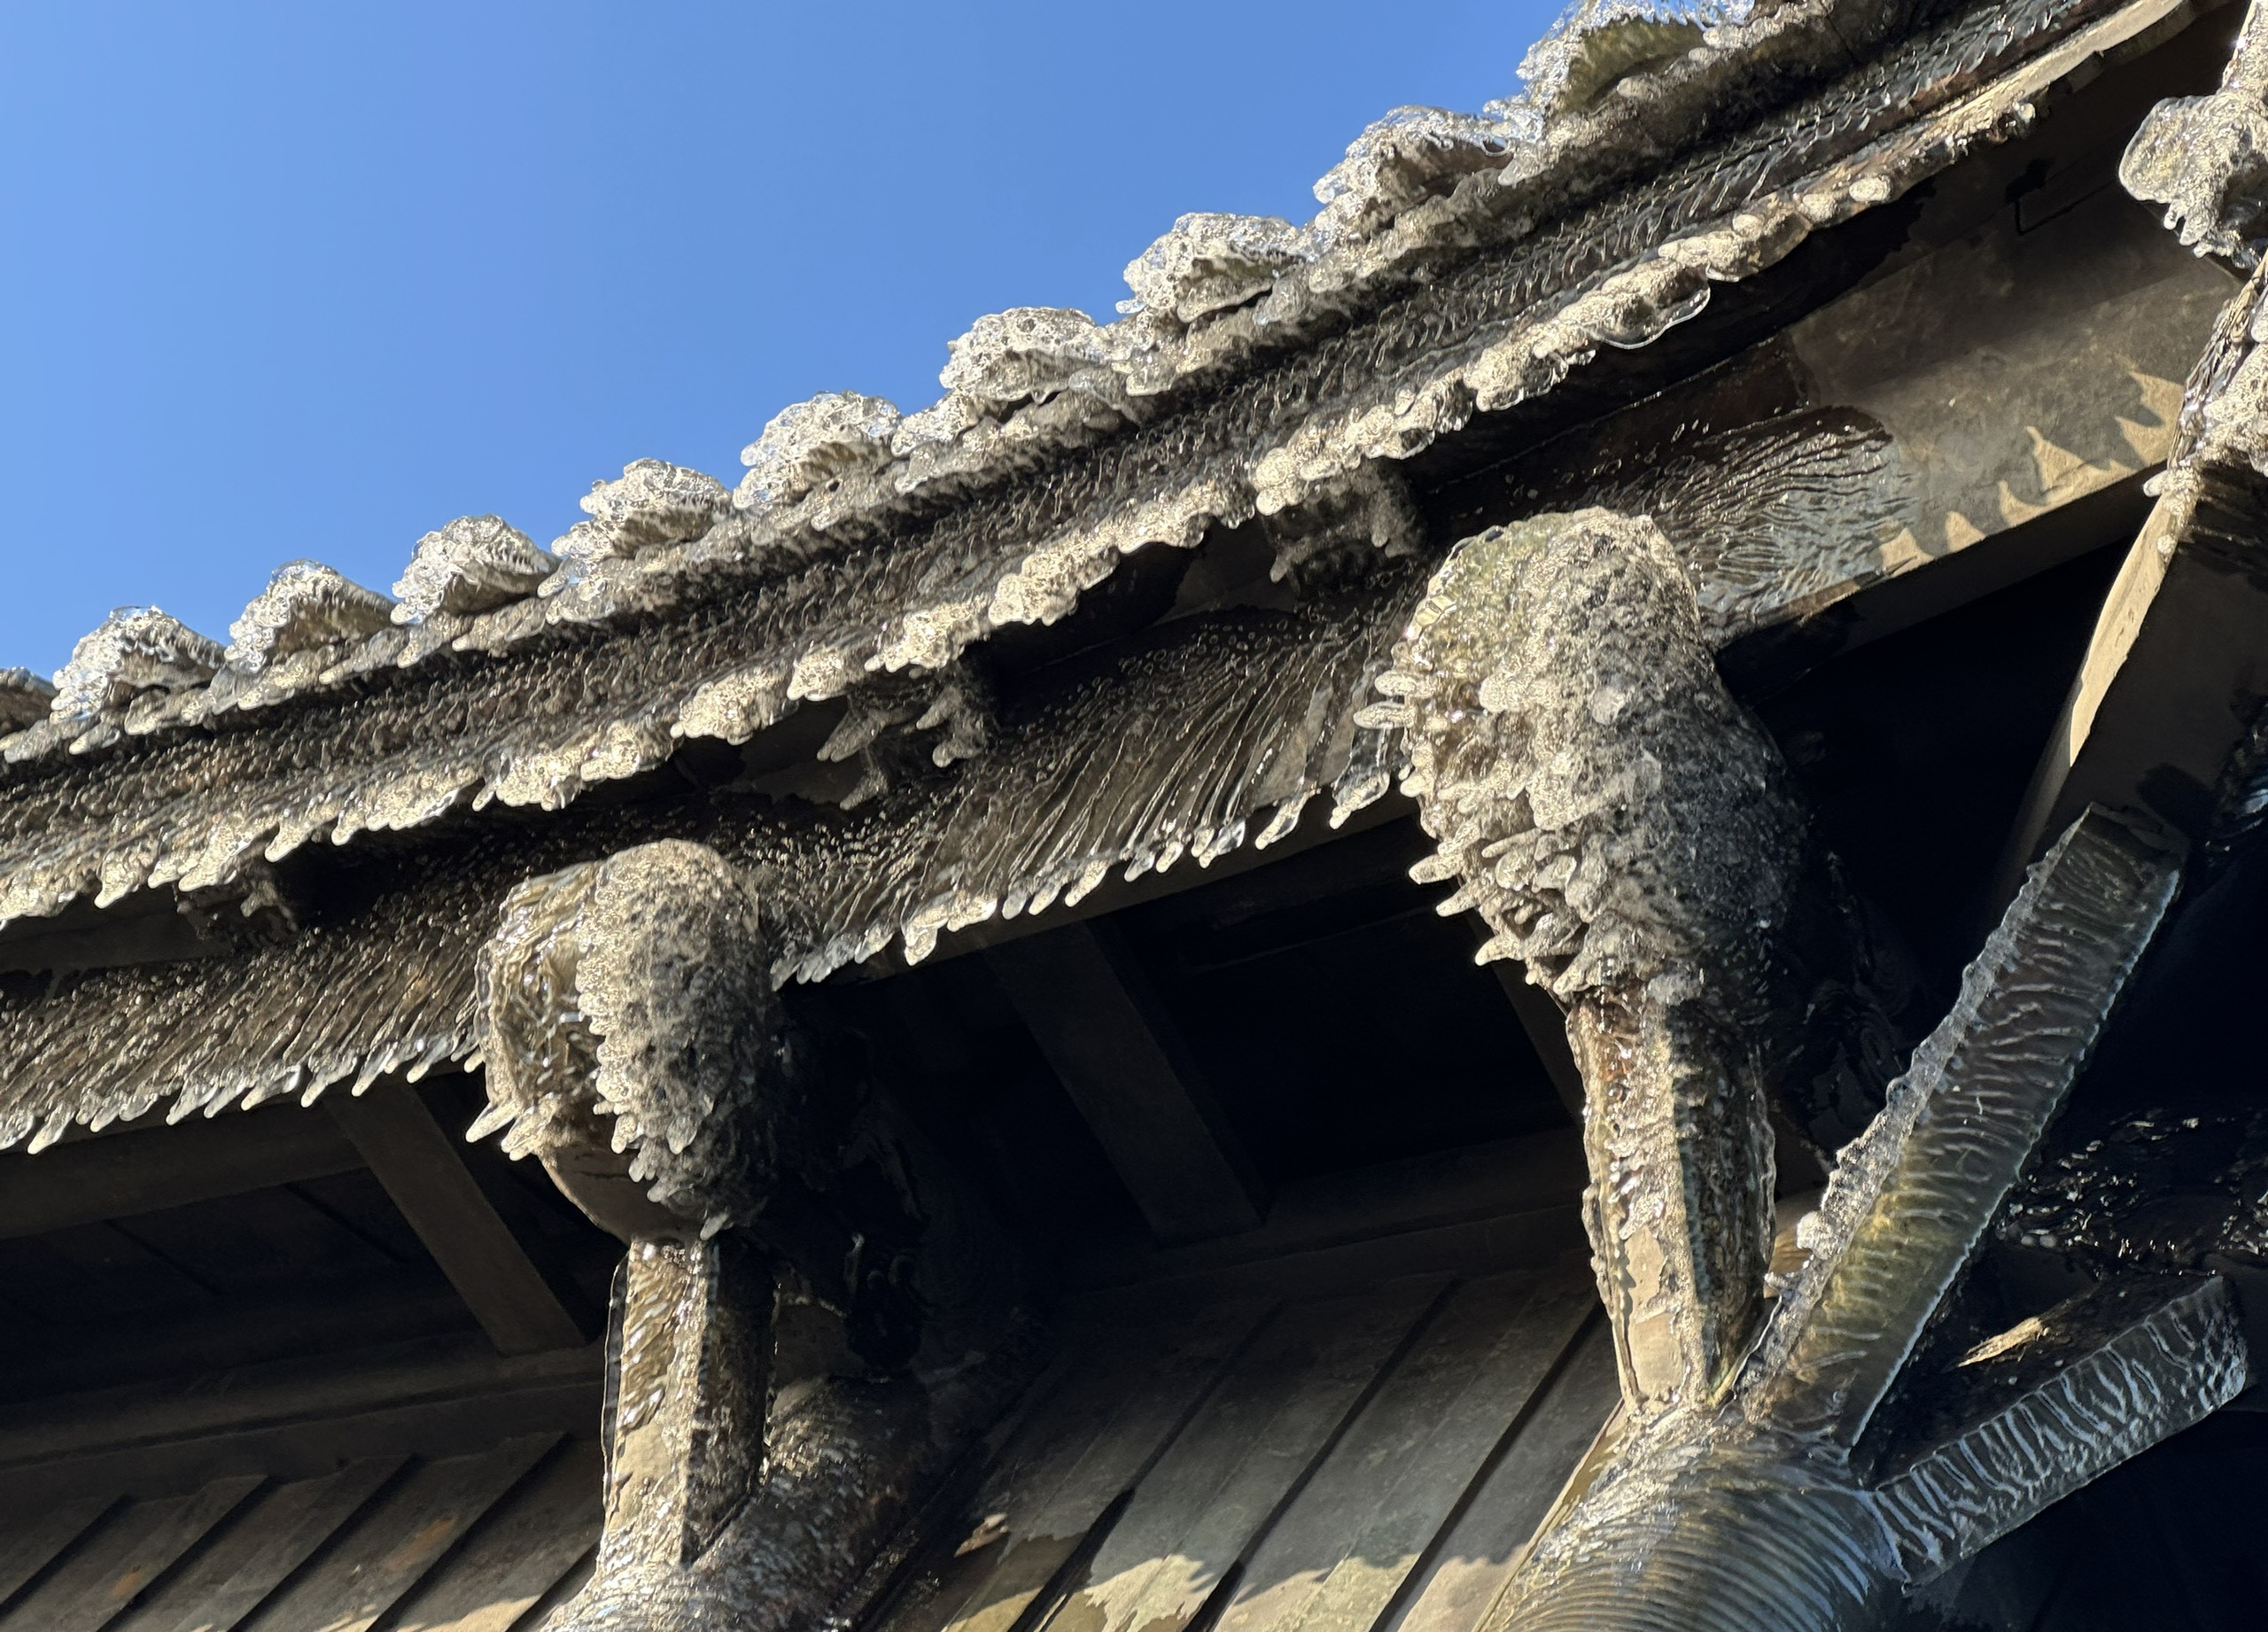 Sau 8 năm, băng giá xuất hiện nhiều trên chùa Đồng Yên Tử